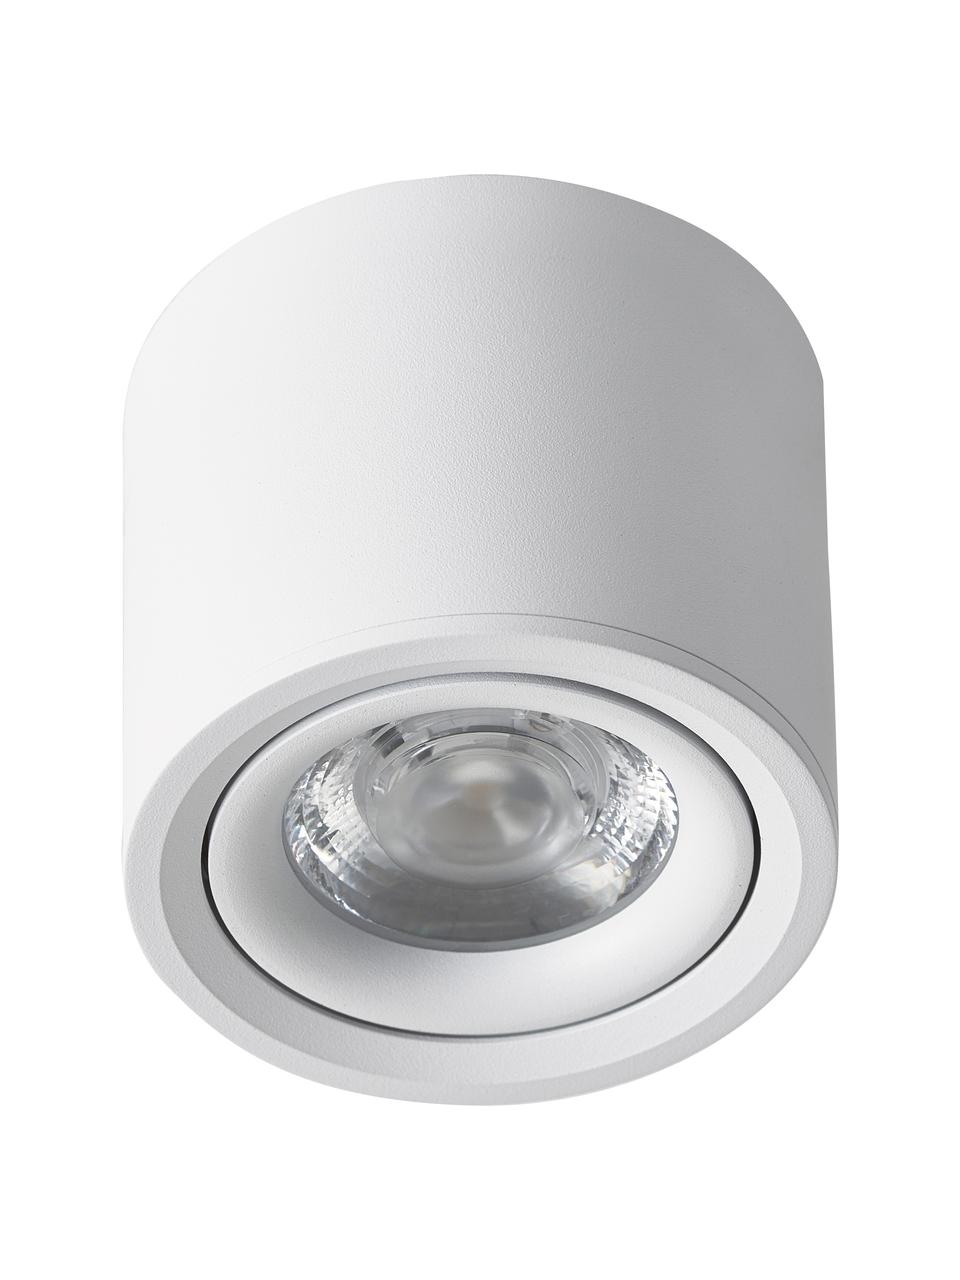 Stropní bodové LED svítidlo Alivia, Kov s práškovým nástřikem, Bílá, Ø 9 cm, V 7 cm